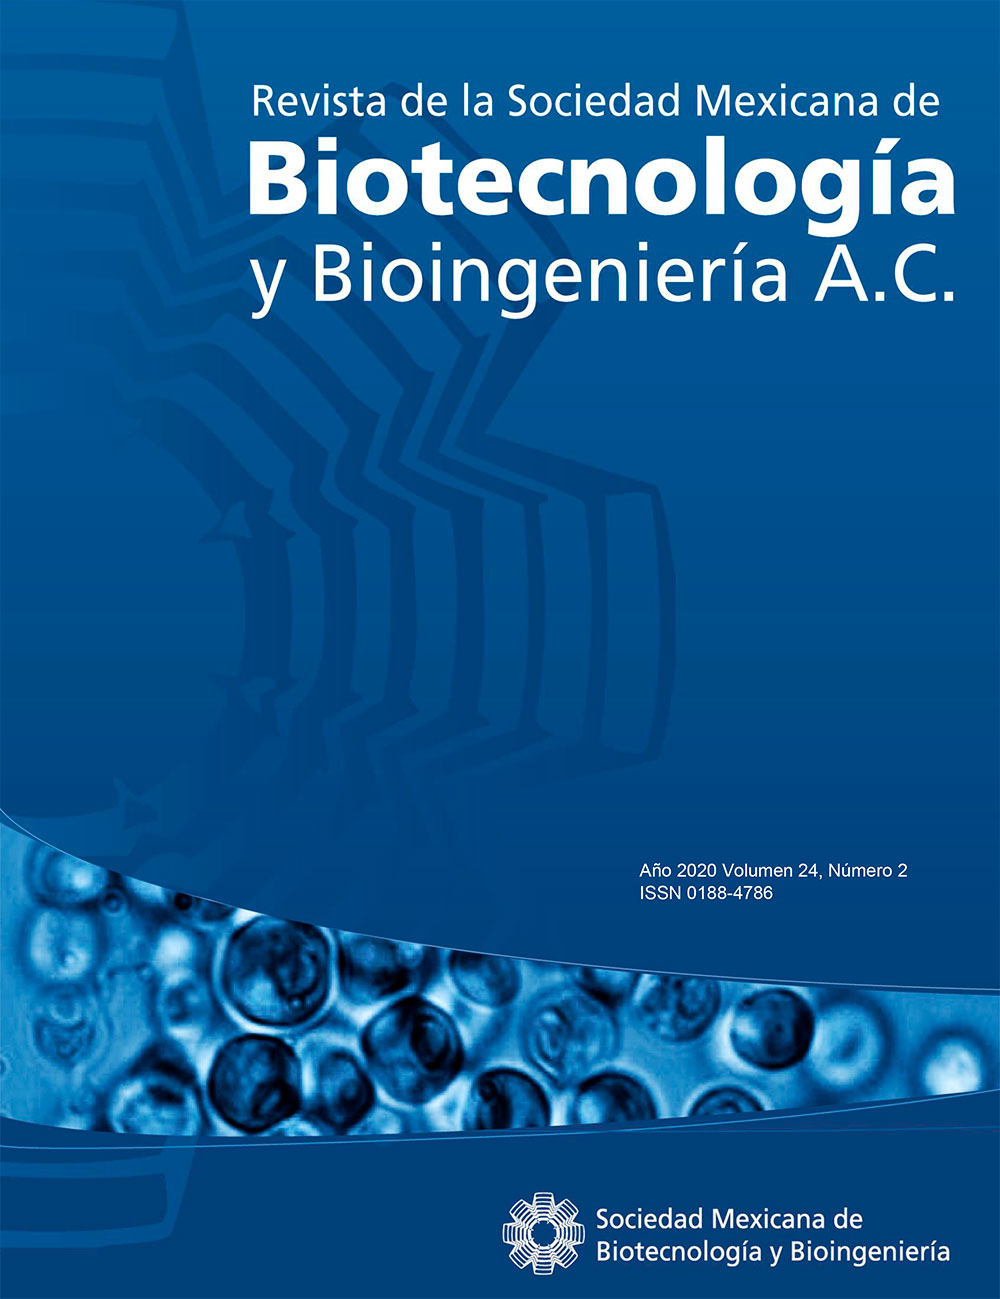 Revista Biotecnología 2020 Vol. 24 Nº2